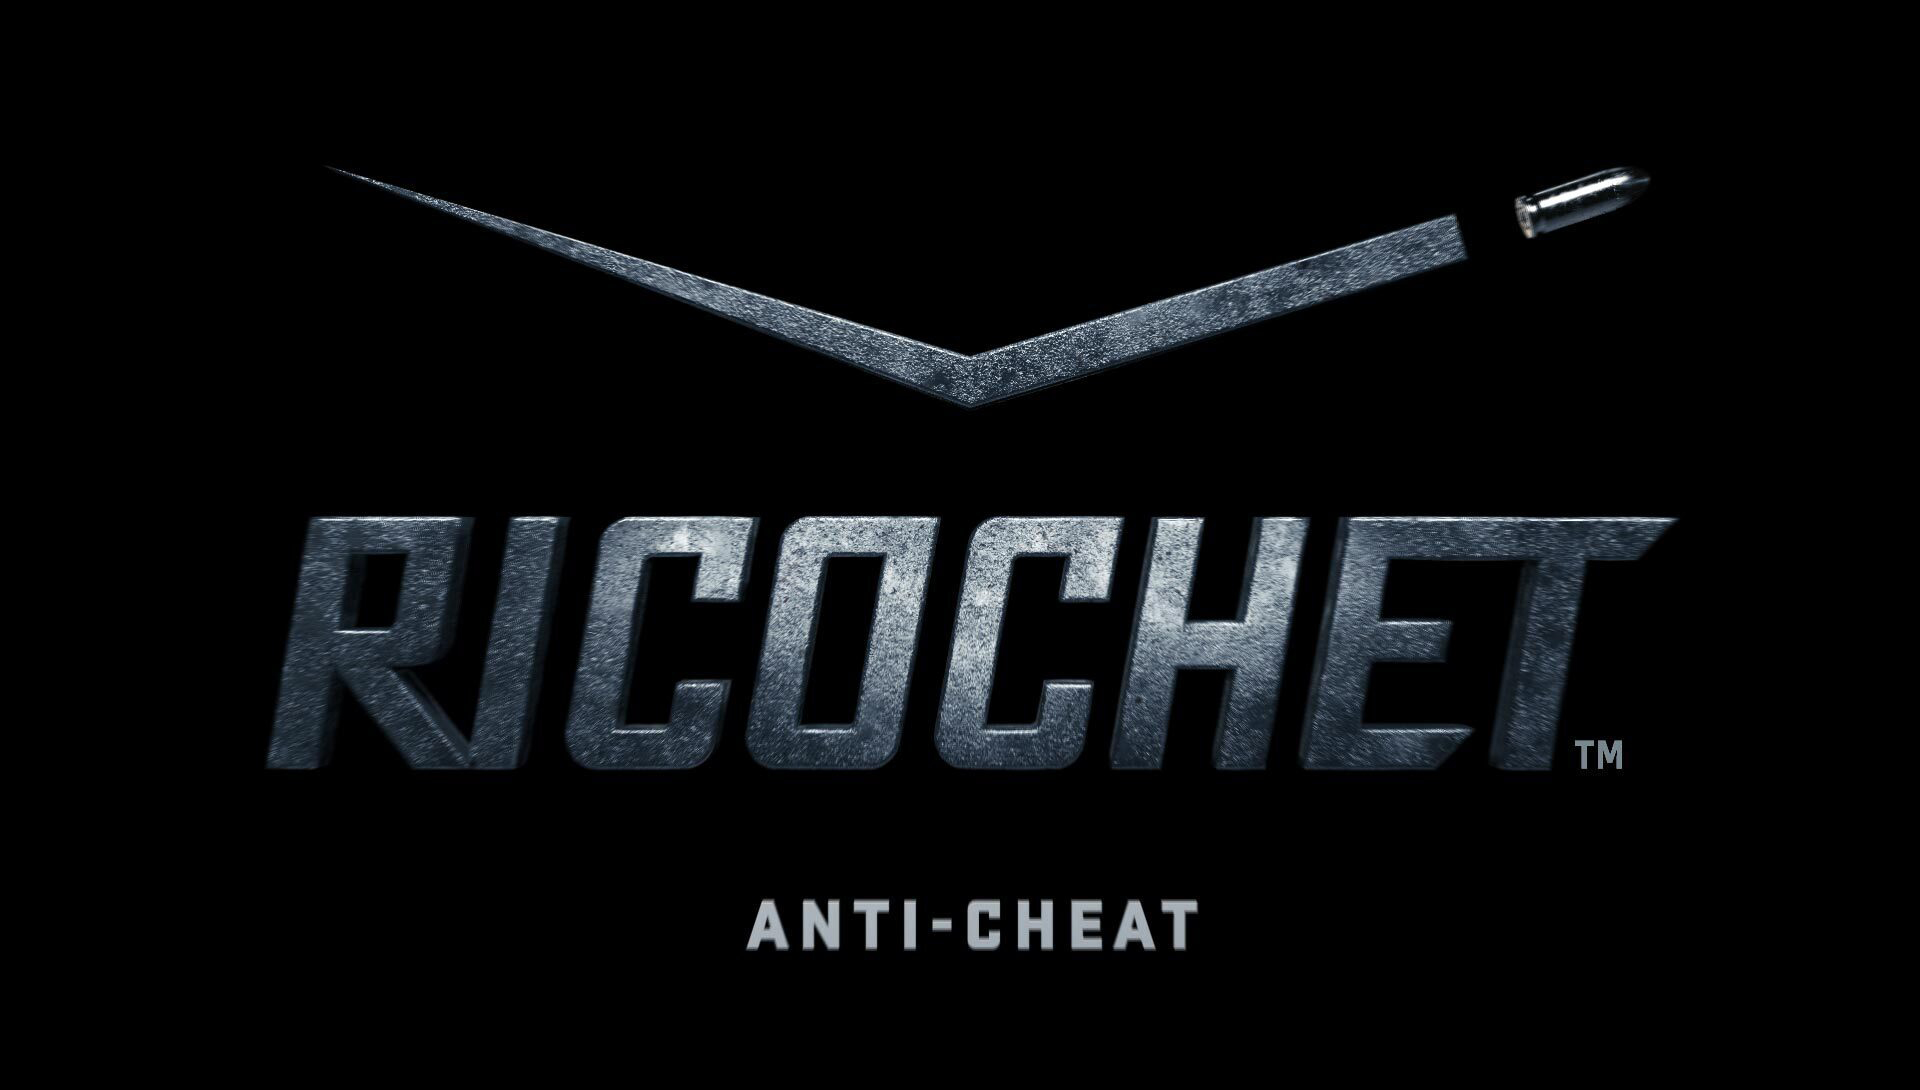 برنامج Ricochet يقوم يظهر فعاليته في حظر الغشاشين في حدث Pacific للعبة Call of Duty: Warzone